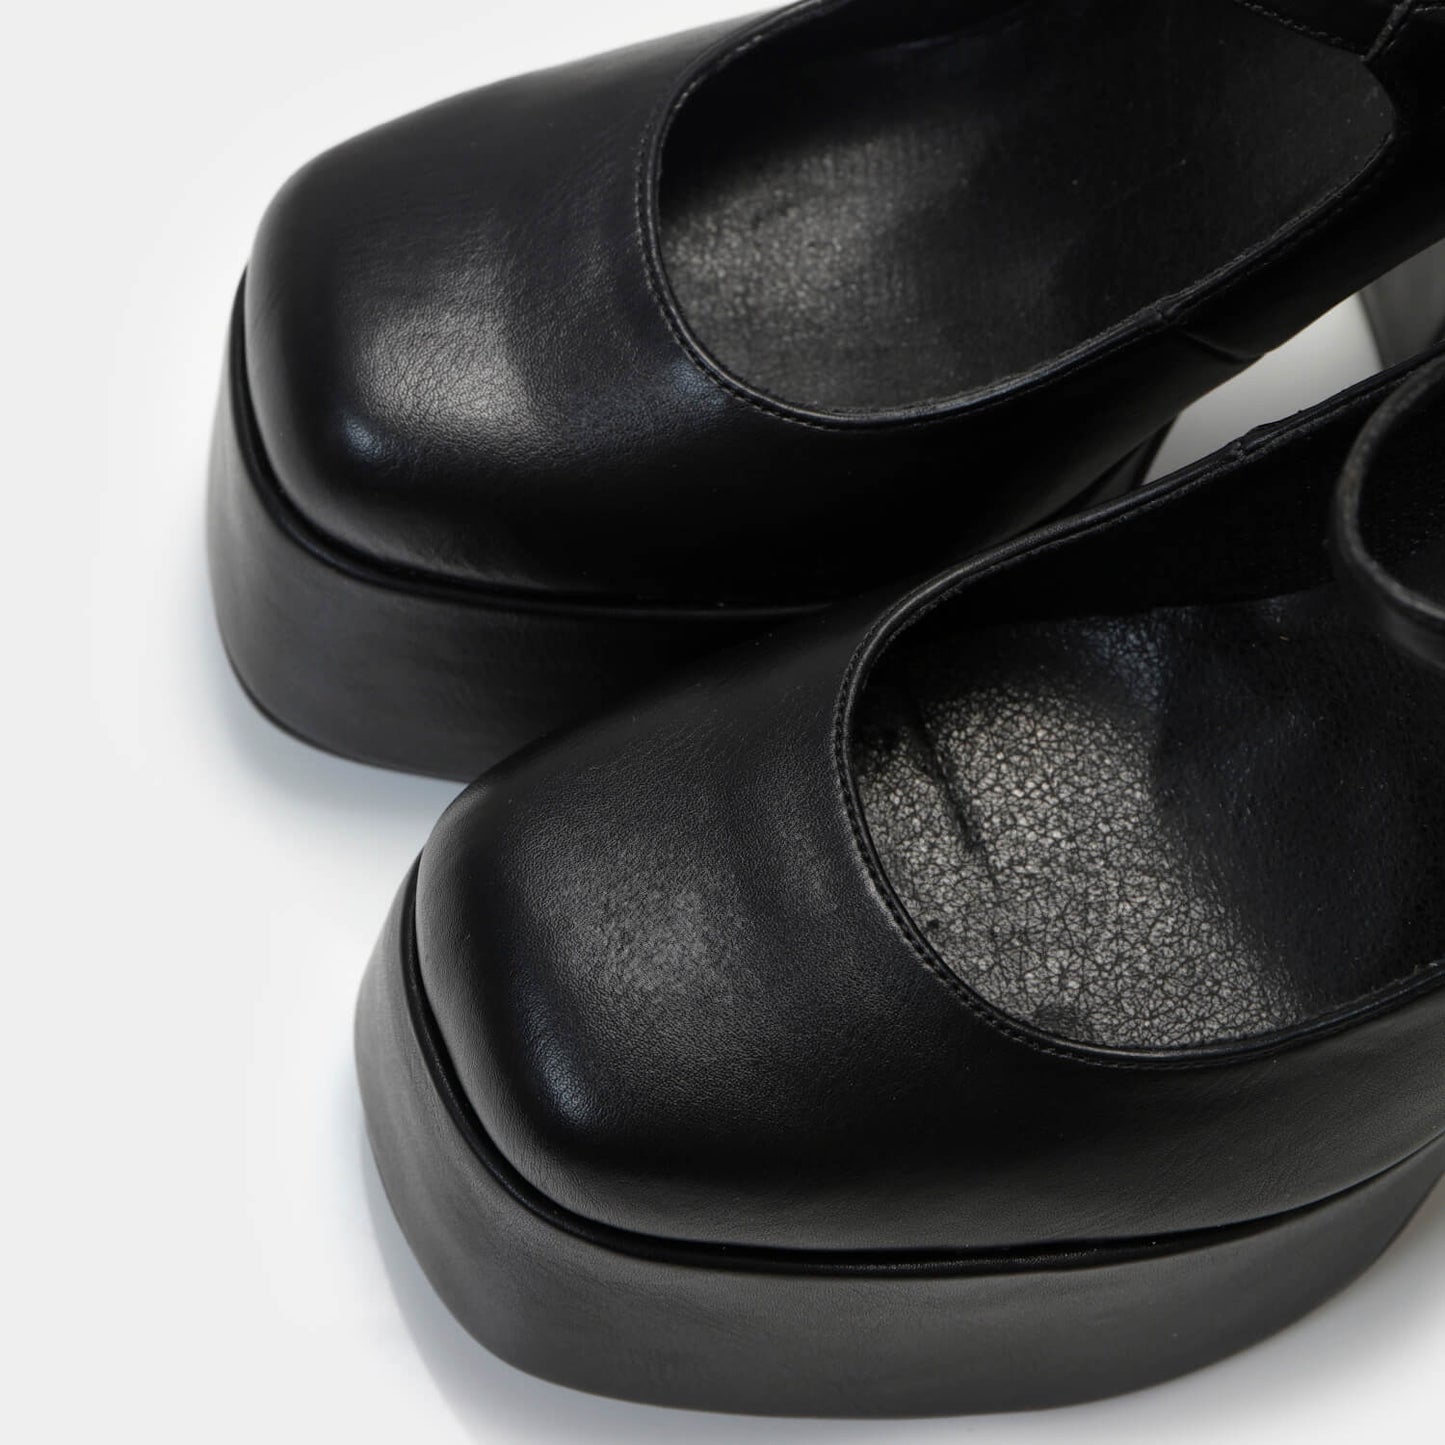 Darkbloom Black Platform Heels - Shoes - KOI Footwear - Black - Top Detail